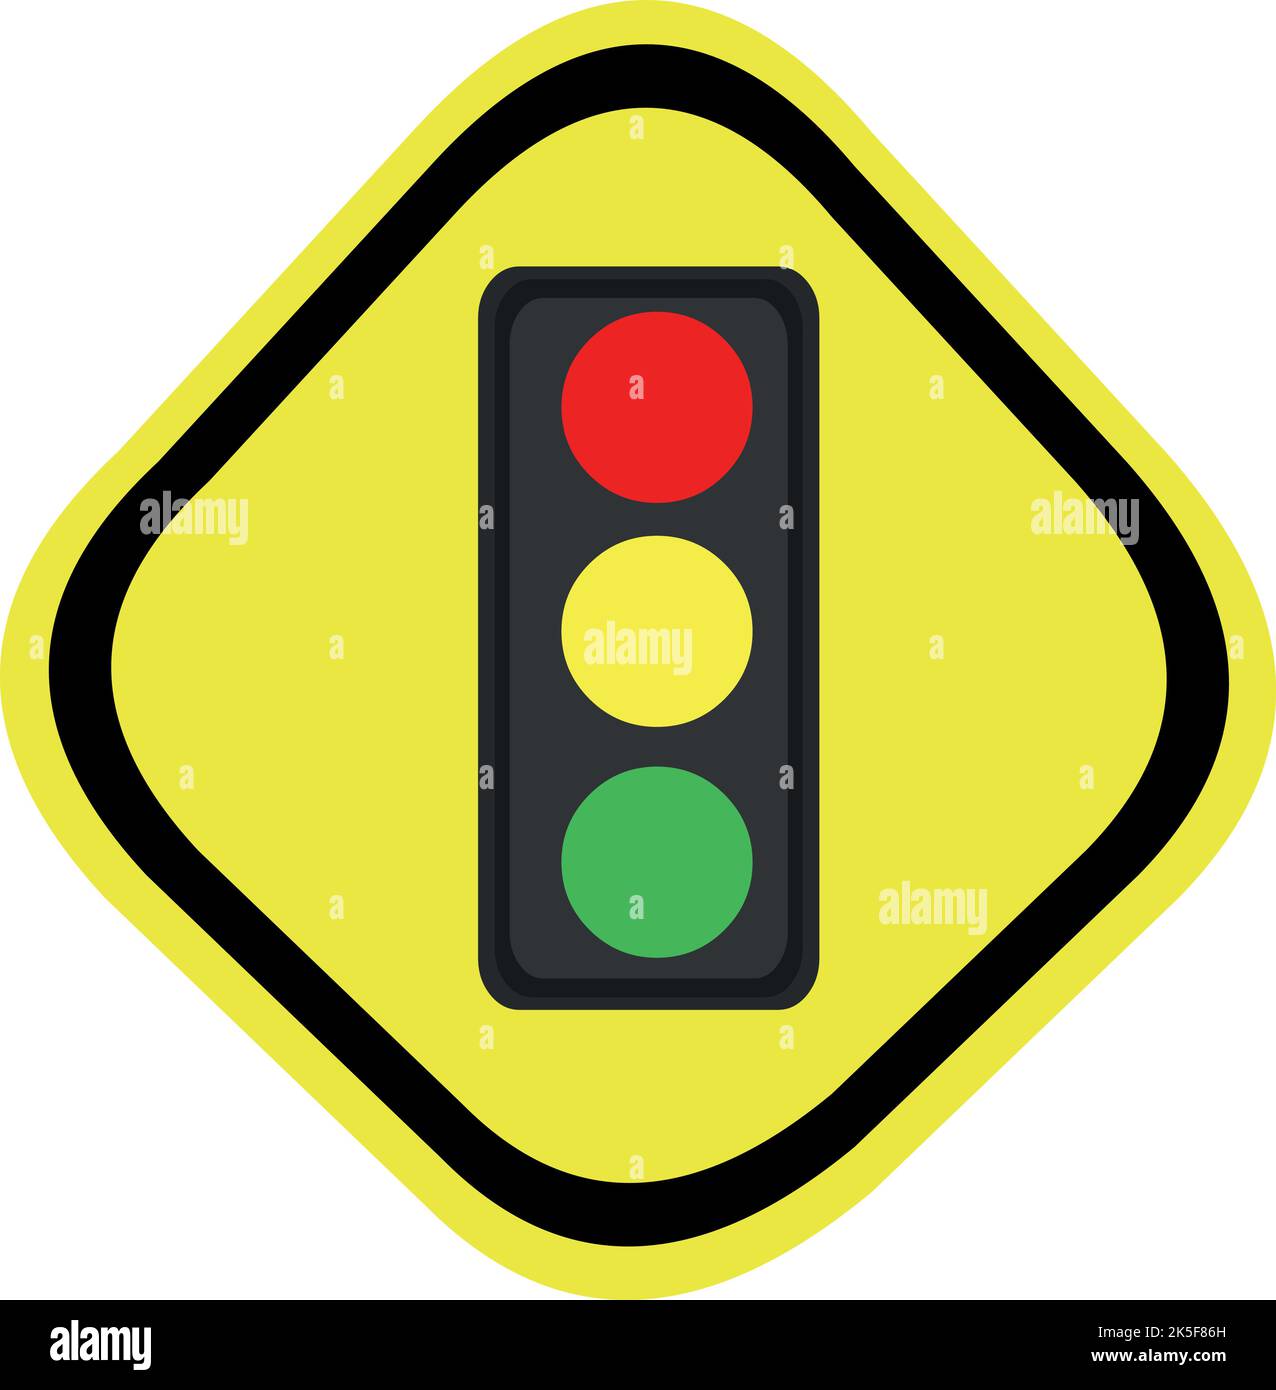 Vektordarstellung des Verkehrssignals von Semaphore mit einem diamantförmigen Hintergrund von gelber und schwarzer Farbe Stock Vektor